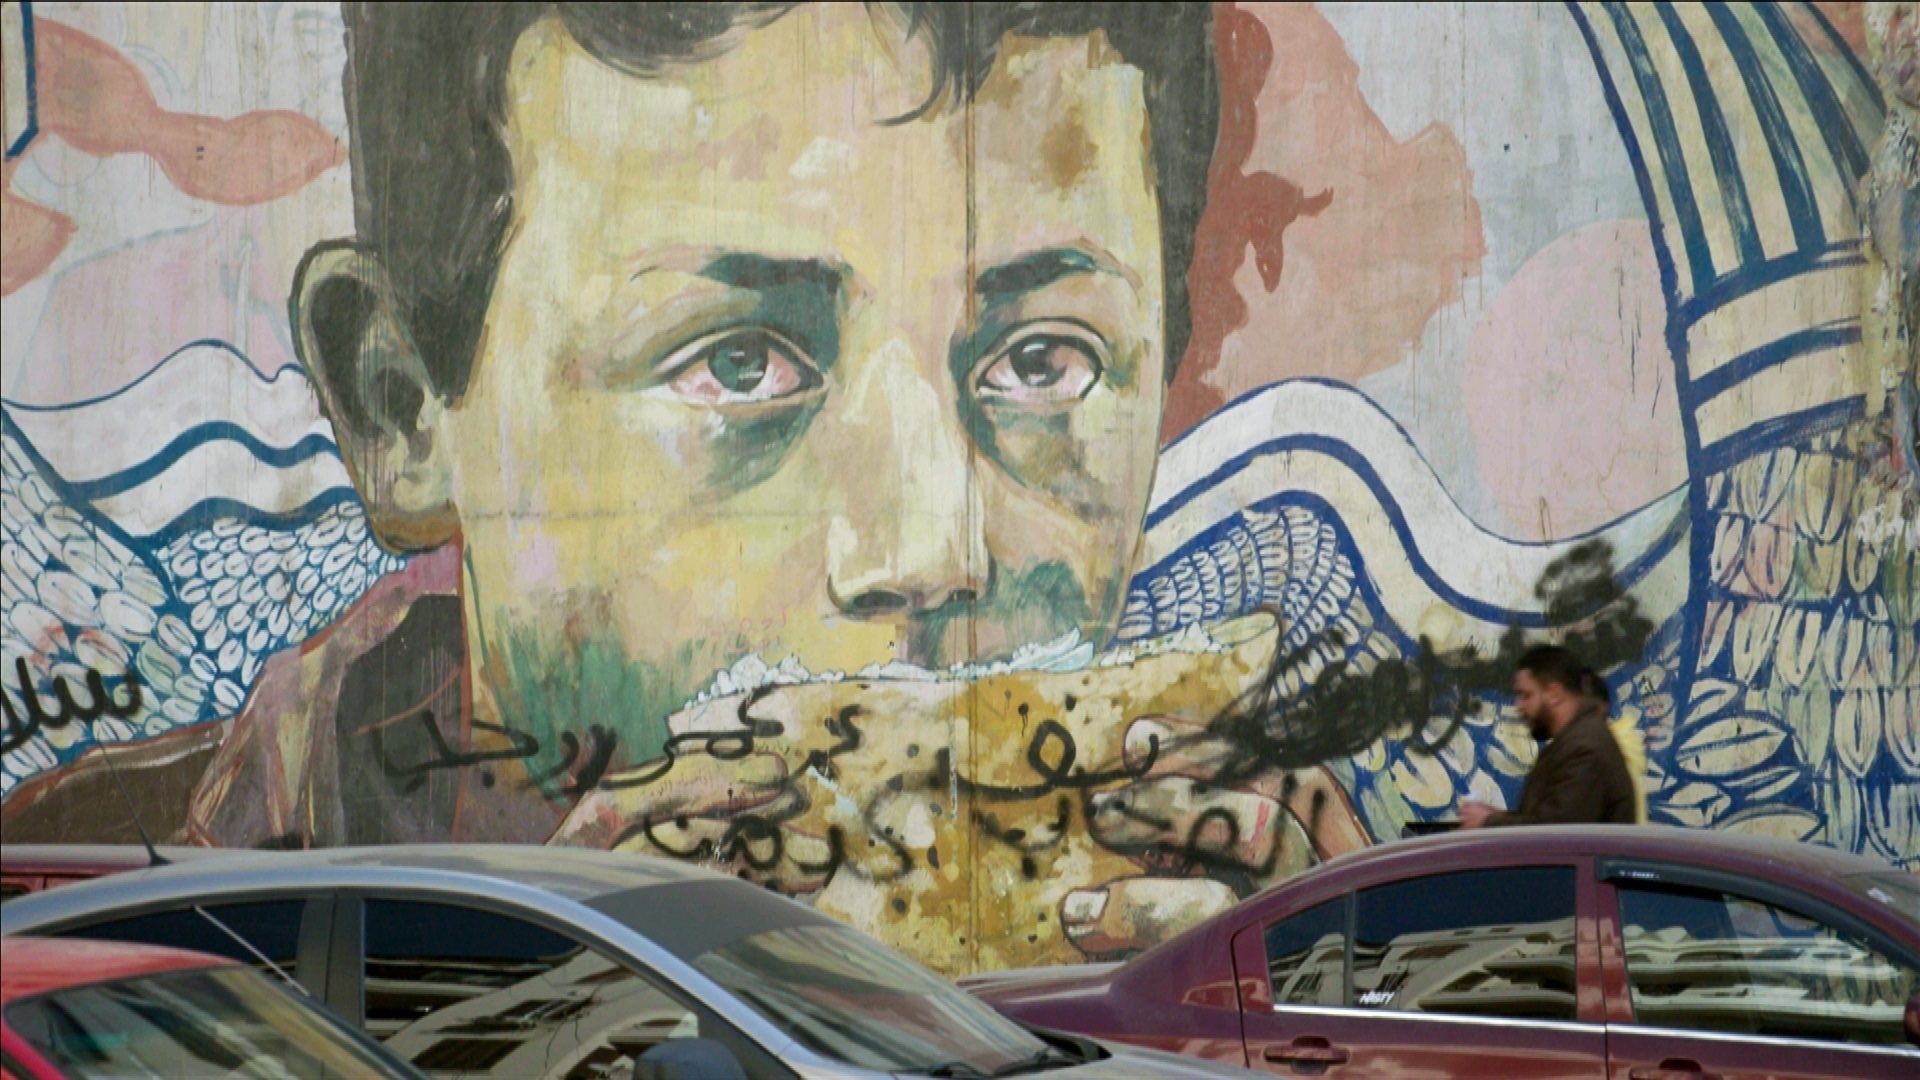 Graffitis und Bilder werden zur Sprache der ägyptischen Revolution 2011. Die meisten wurden  mittlerweile übermalt. © ZDF/Torben Müller